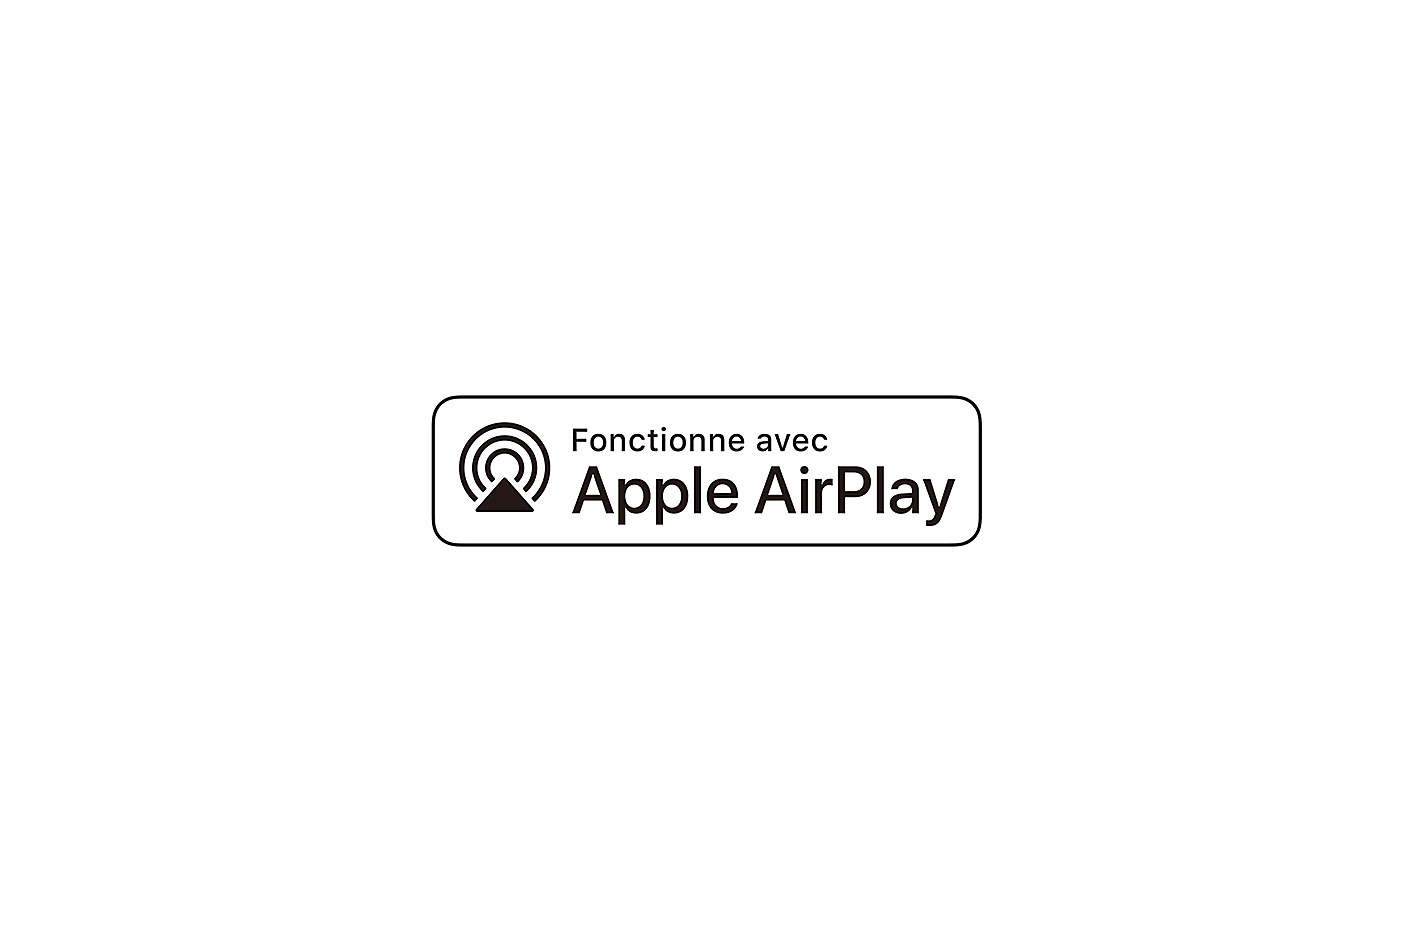 Apple AirPlay 標誌影像